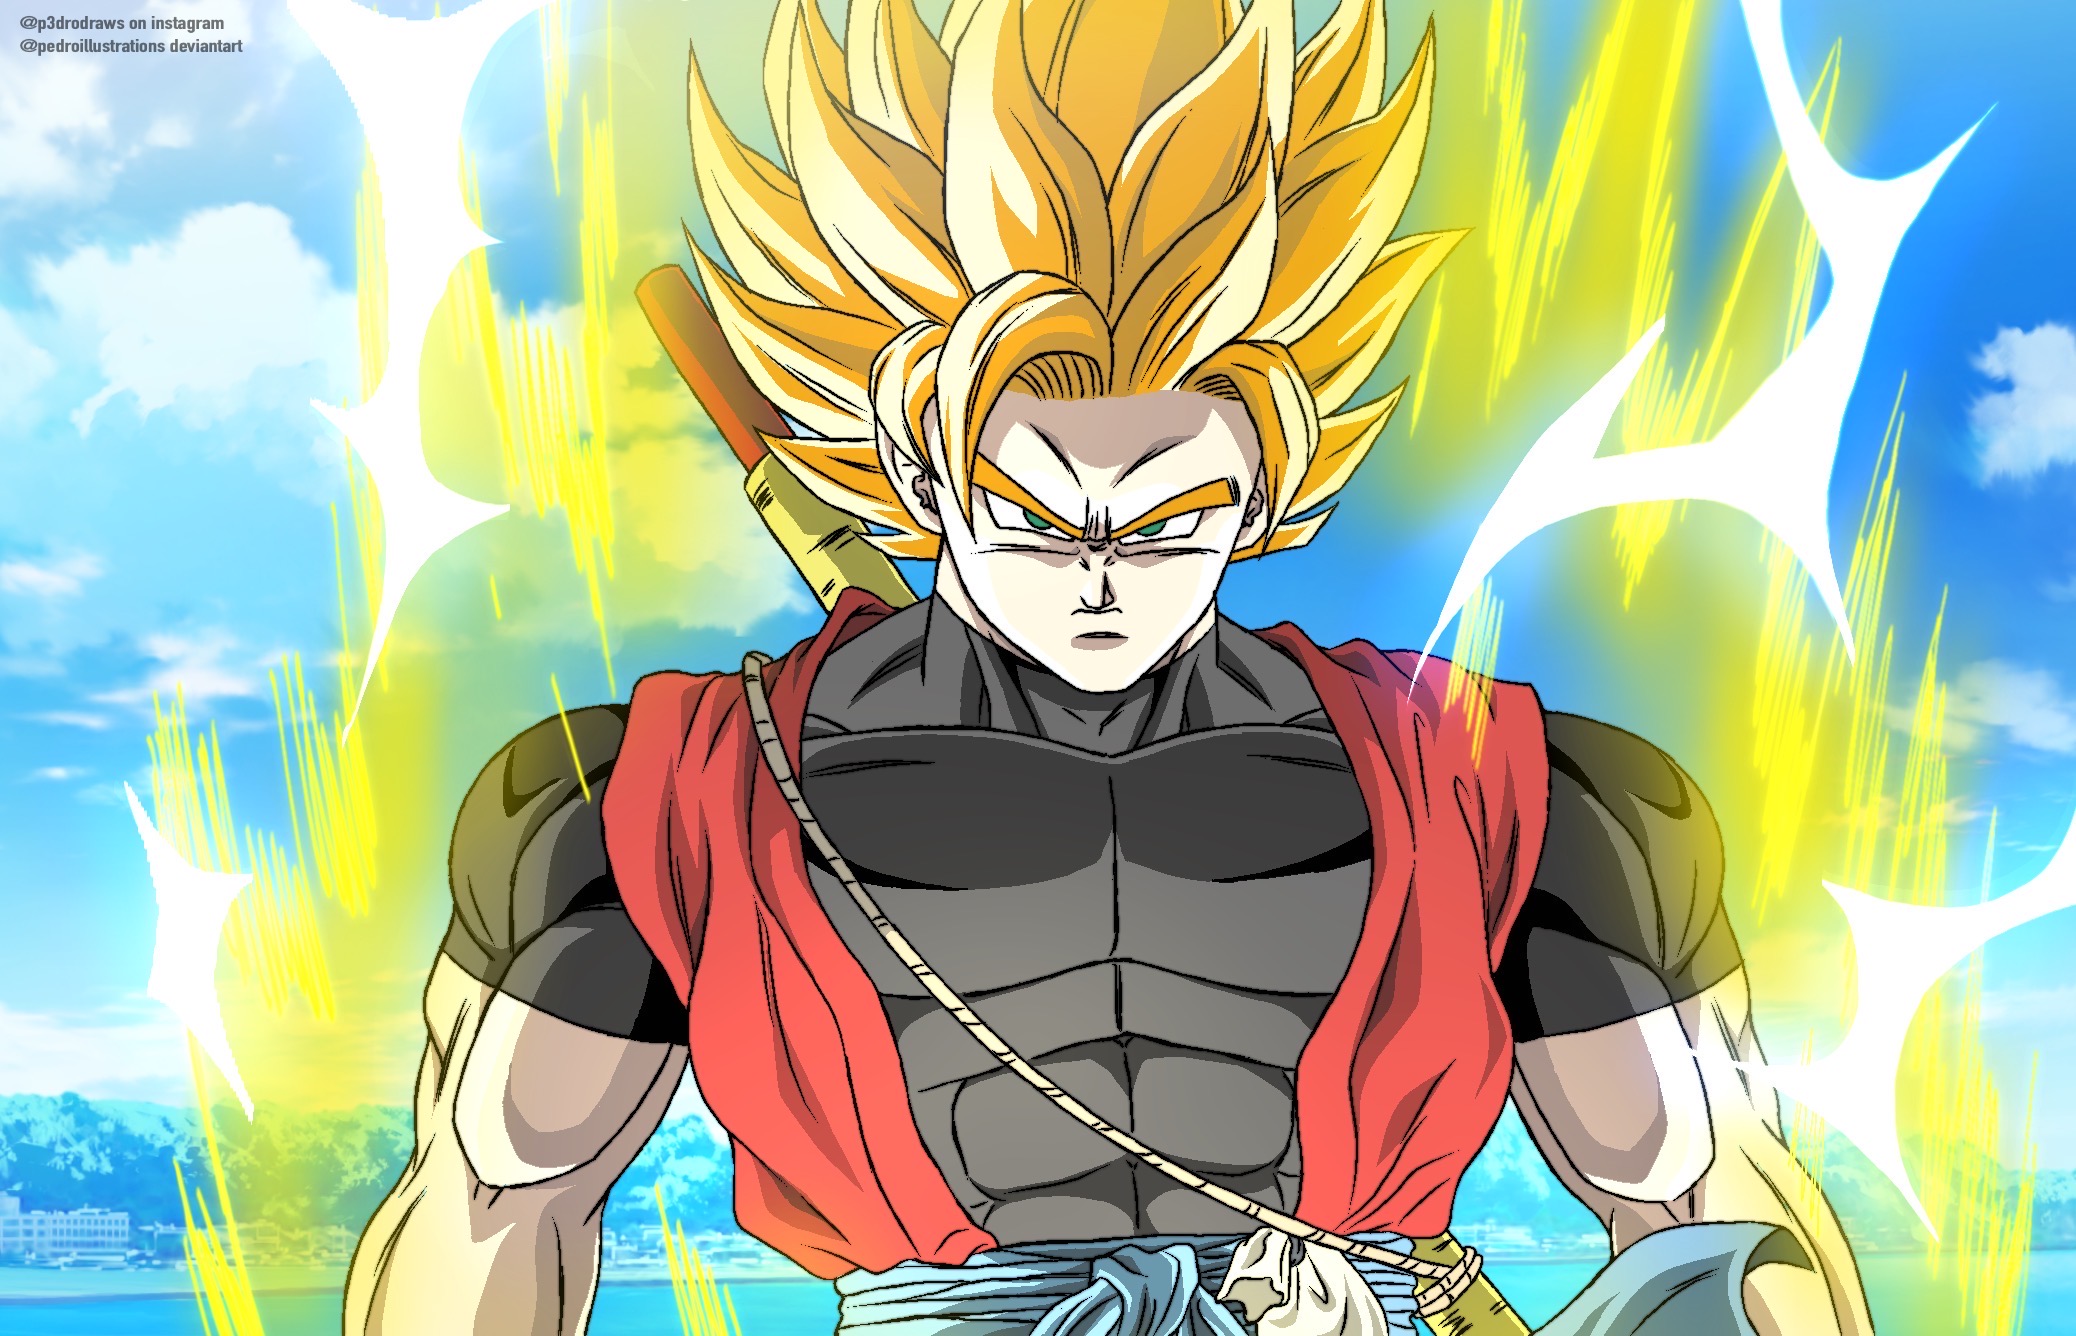 Super Saiyan 2 Goku by chanmio67 on DeviantArt